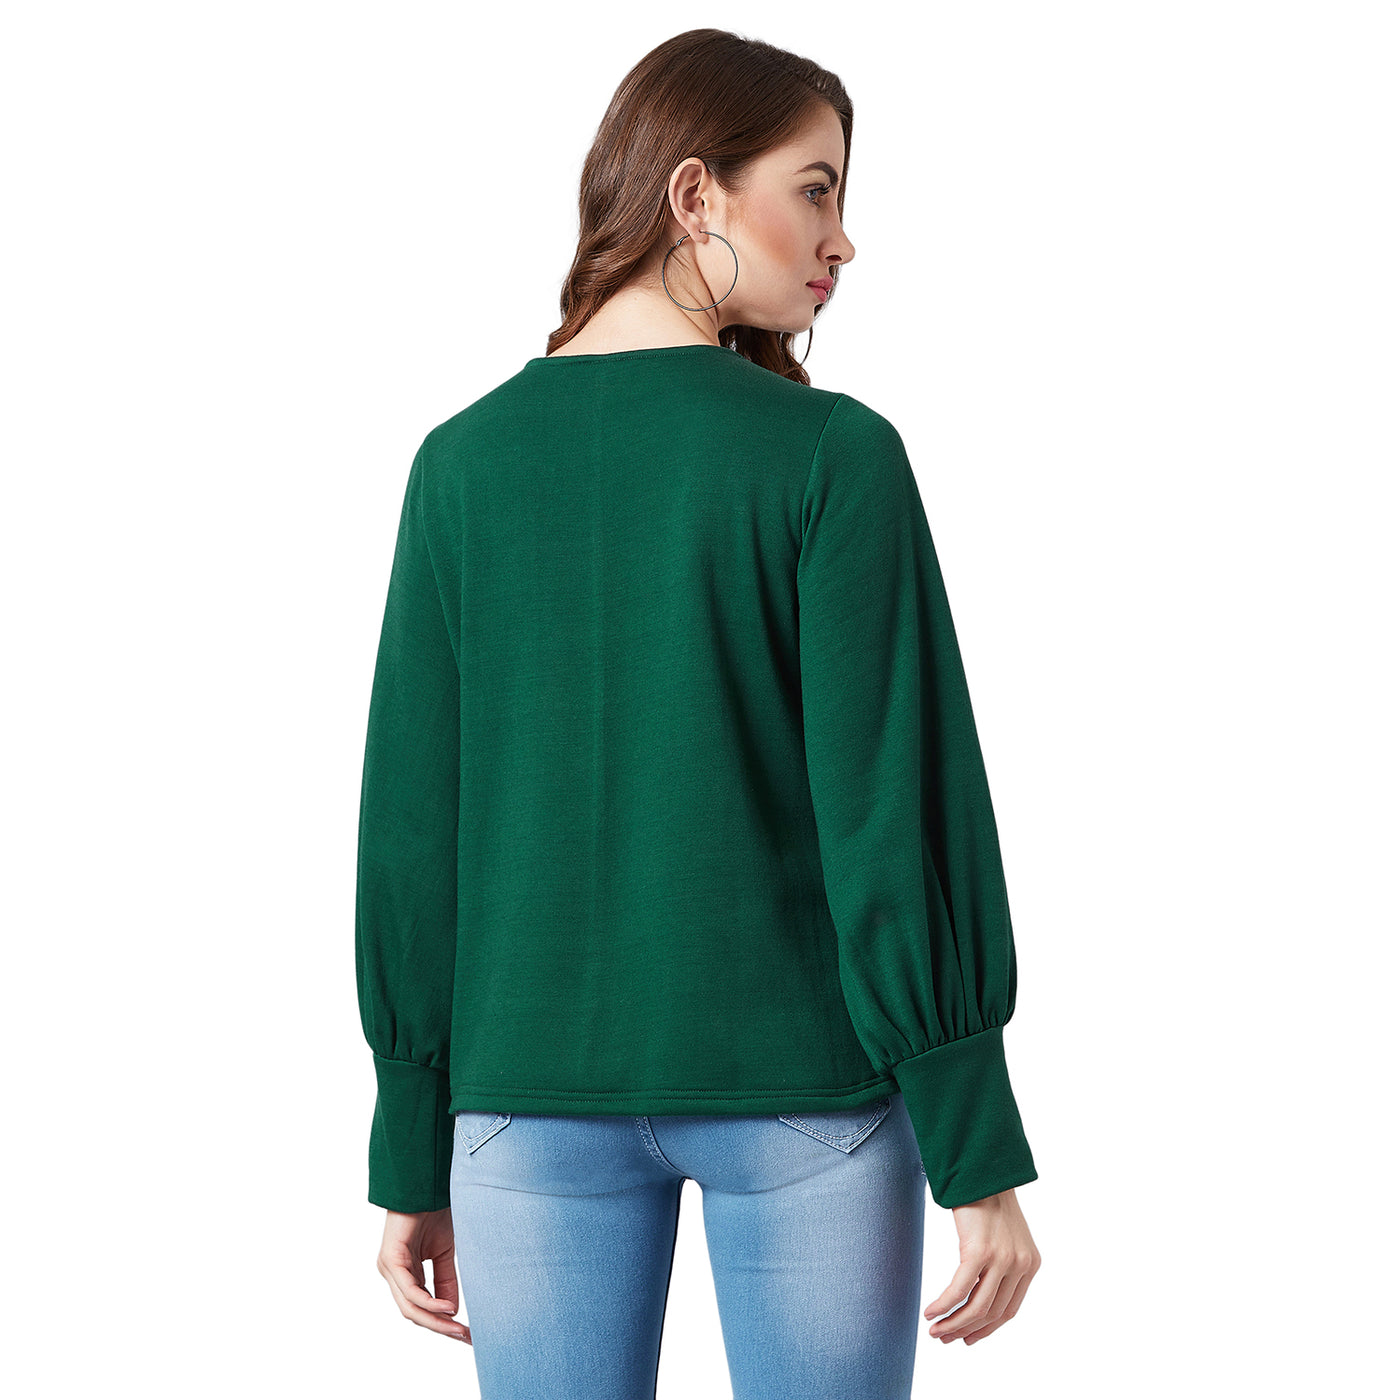 Athena Women Green Embroidered Sweatshirt - Athena Lifestyle